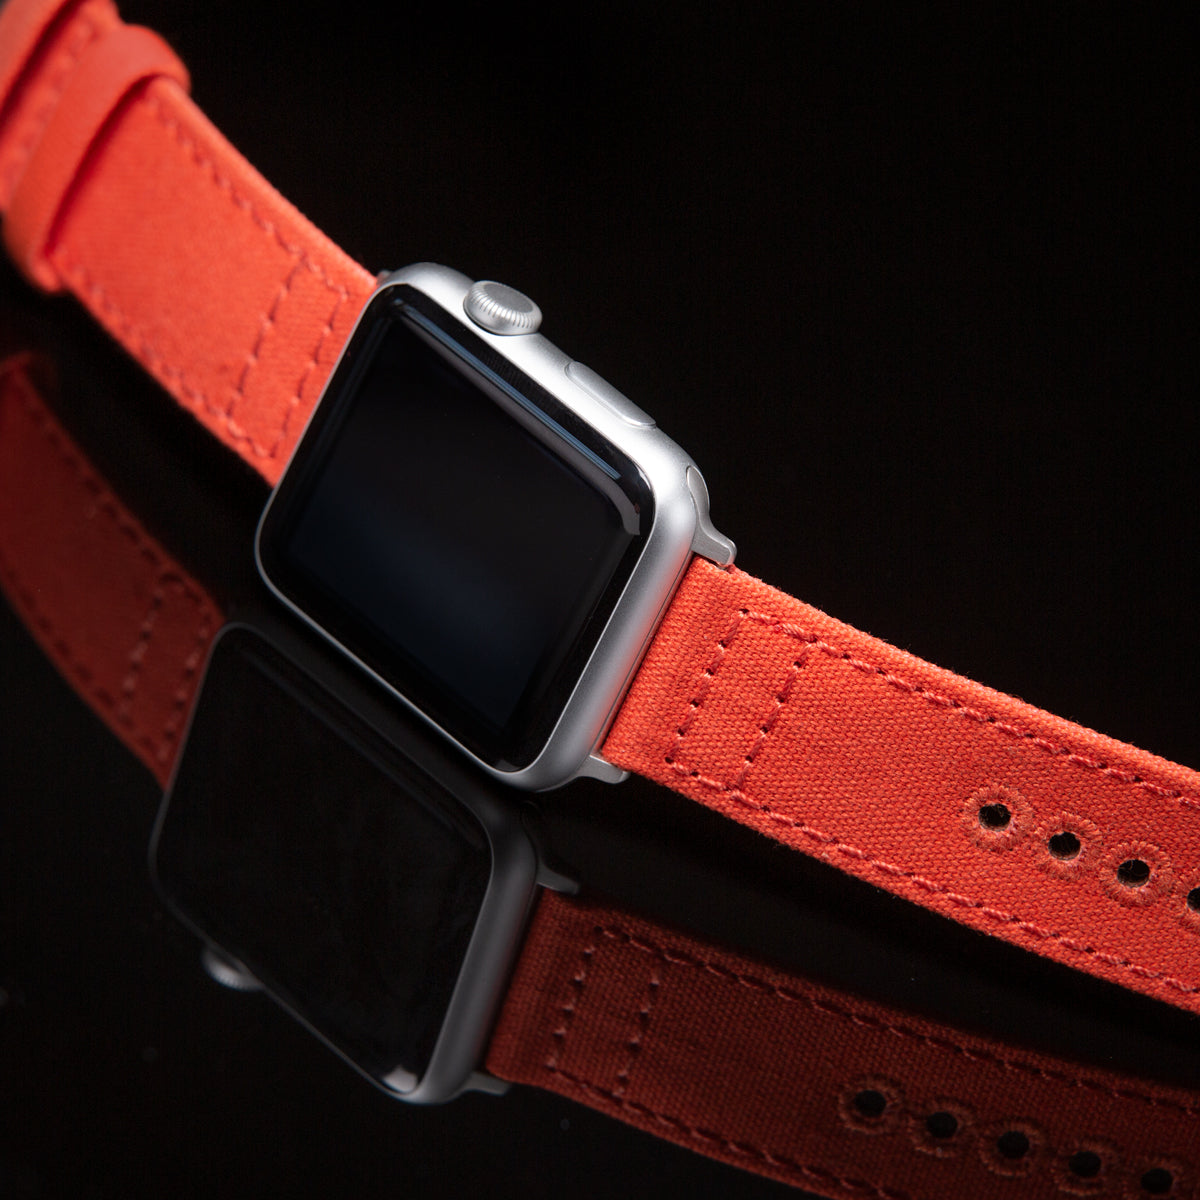 Apple Watch Canvas - Tangelo Orange/Space Gray – Archer Watch Straps